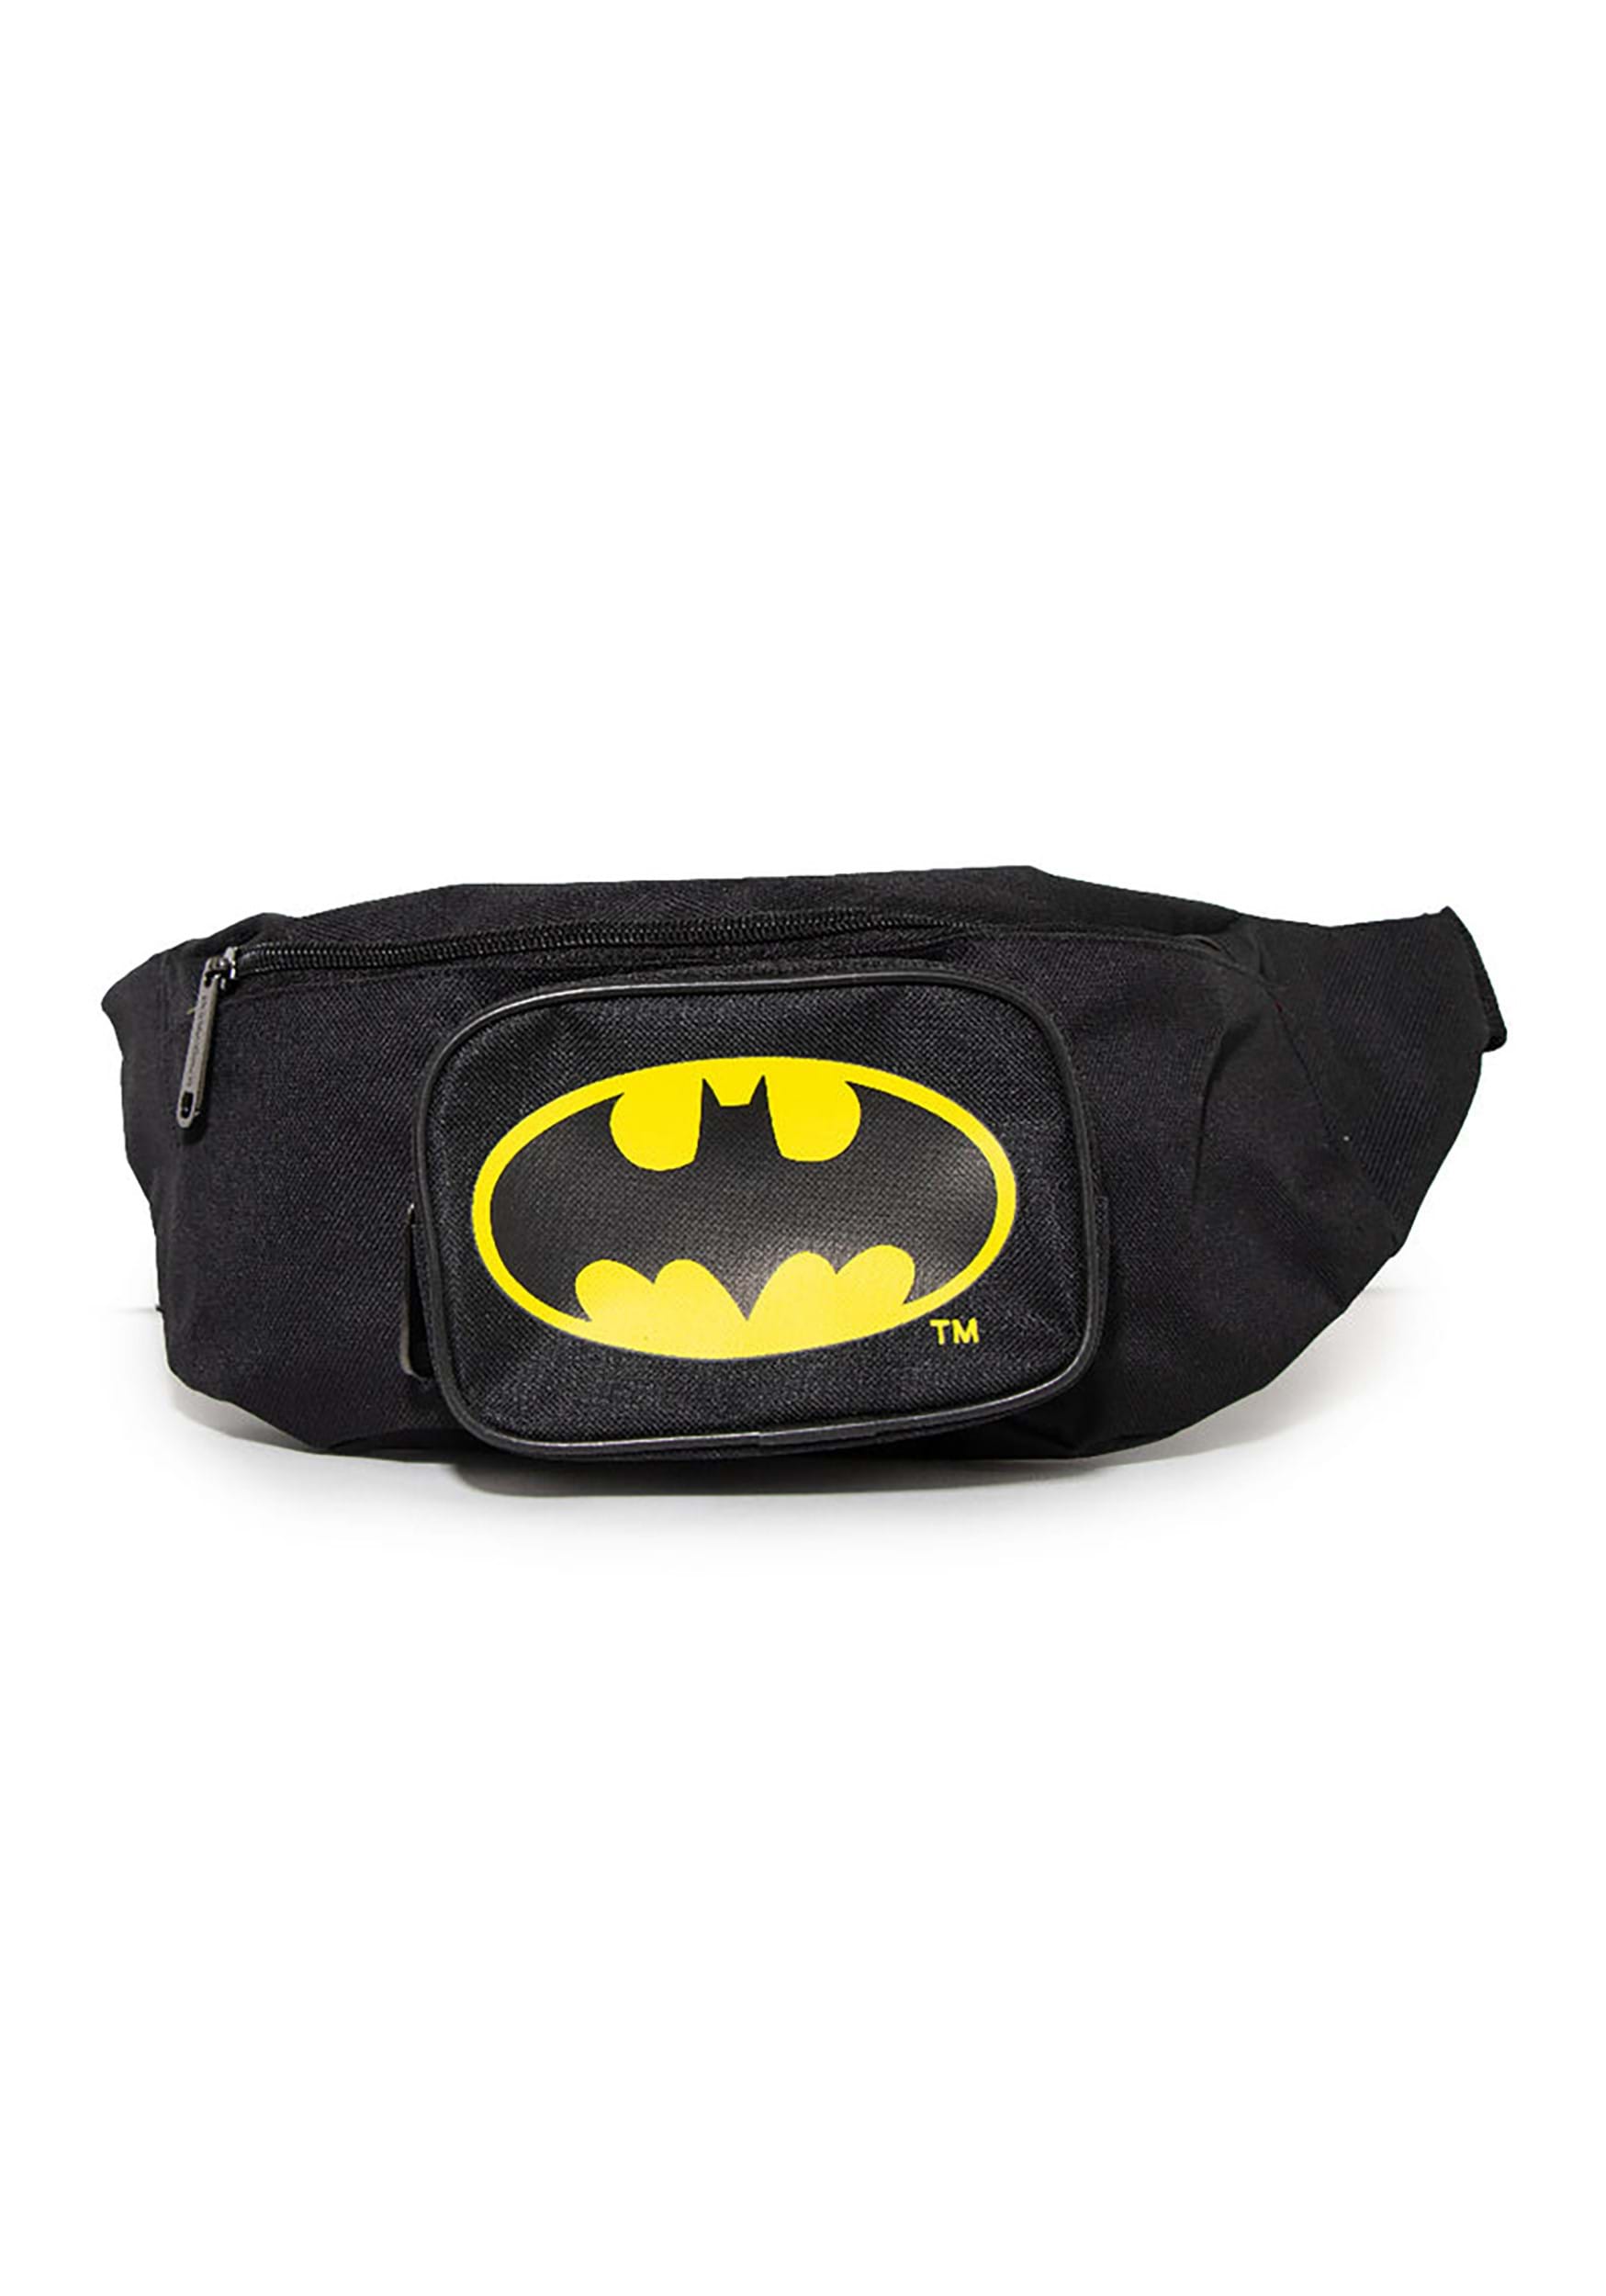 DC Comics Batman Bat Signal Double Zipper Fanny Pack Bag , Batman Accessories